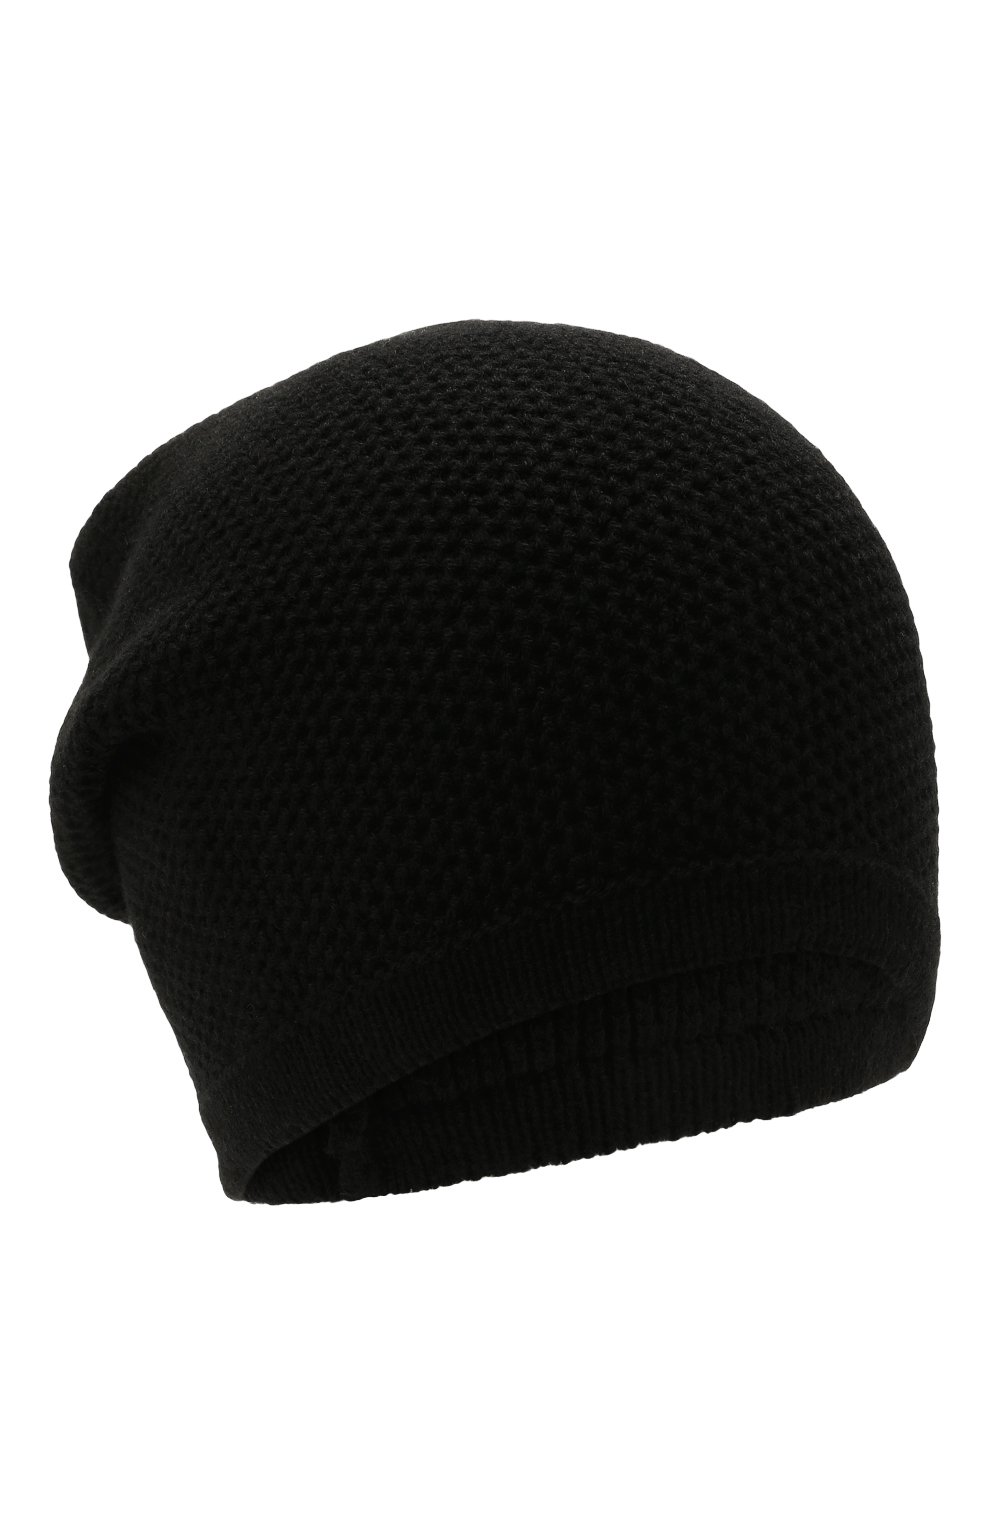 Женская кашемировая шапка INVERNI черного цвета, арт. 5263 CM | Фото 1 (Материал: Текстиль, Кашемир, Шерсть)